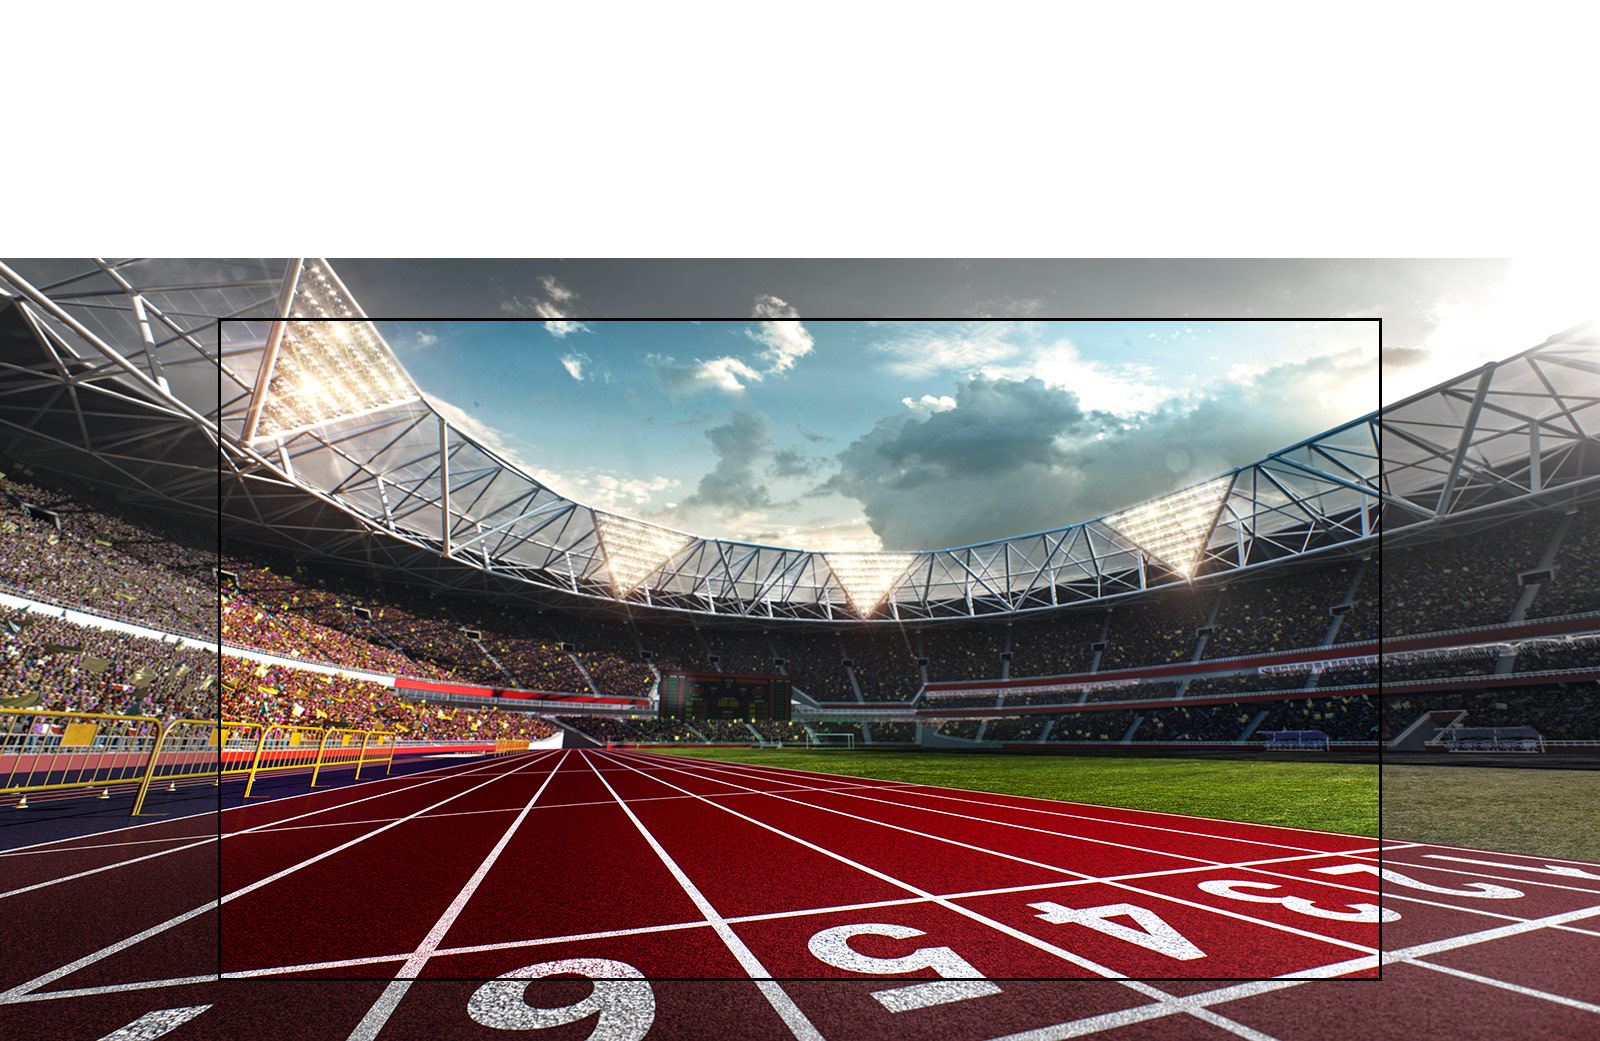 Écran de téléviseur montrant un stade avec une image en plan rapproché d’une piste de course. Le stade est rempli de spectateurs.